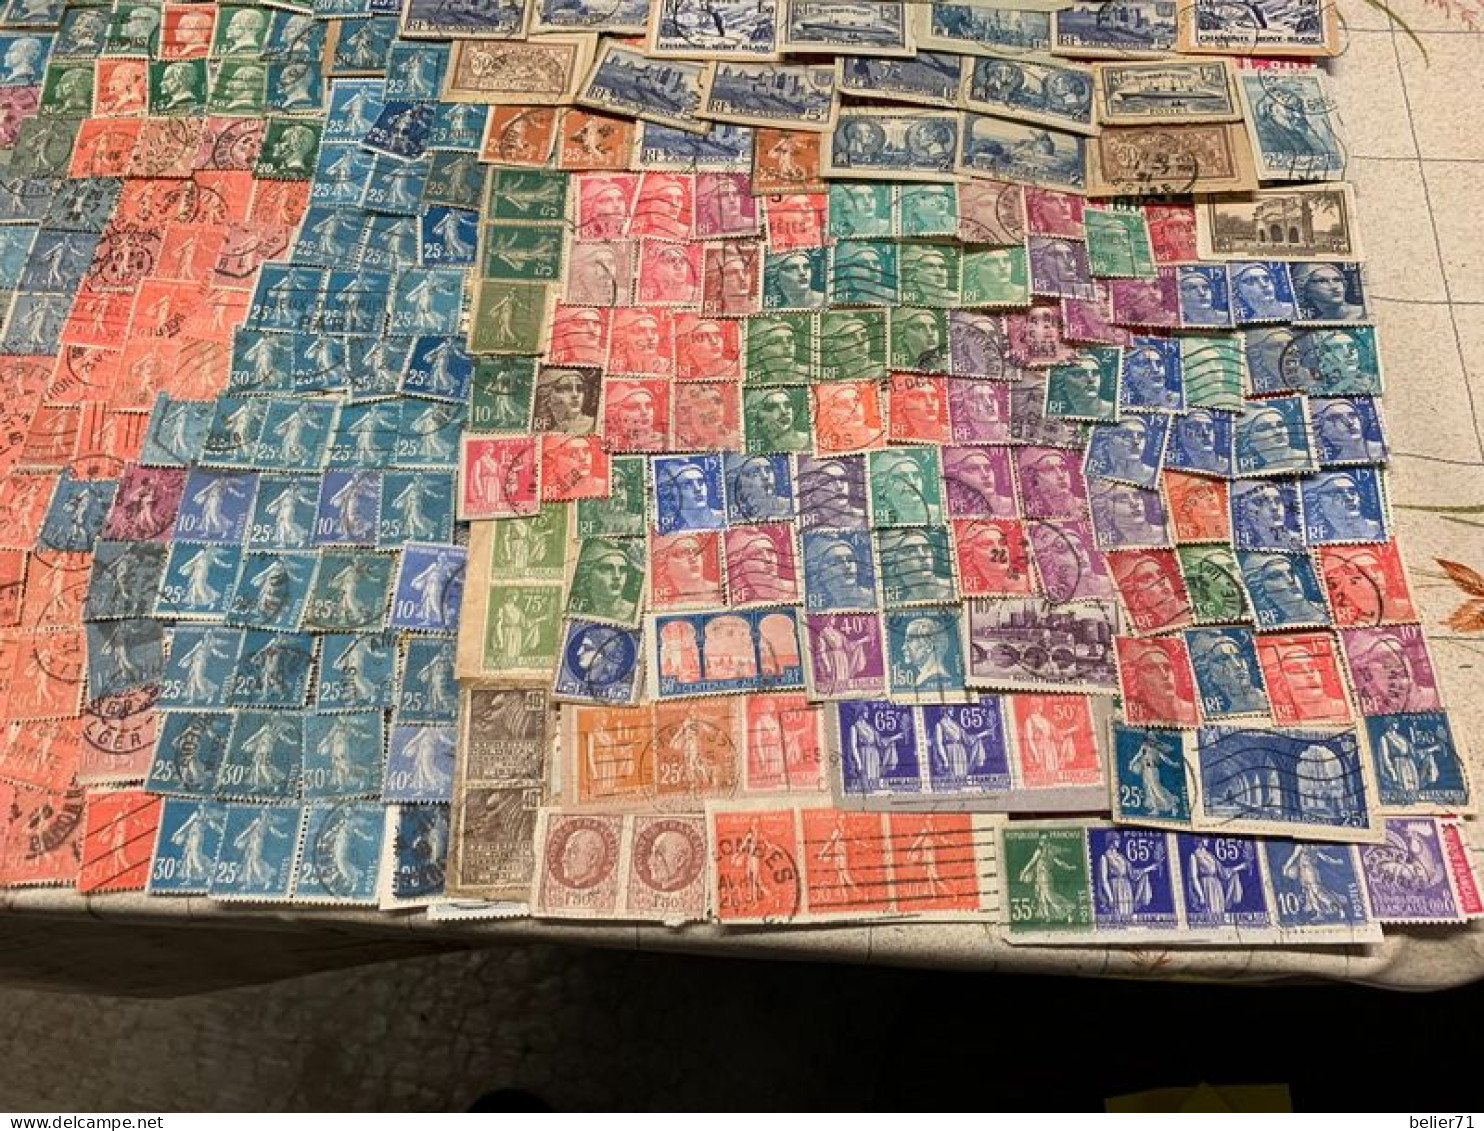 Vrac de timbres de France, toutes périodes, touts états aucun tri particulier fait